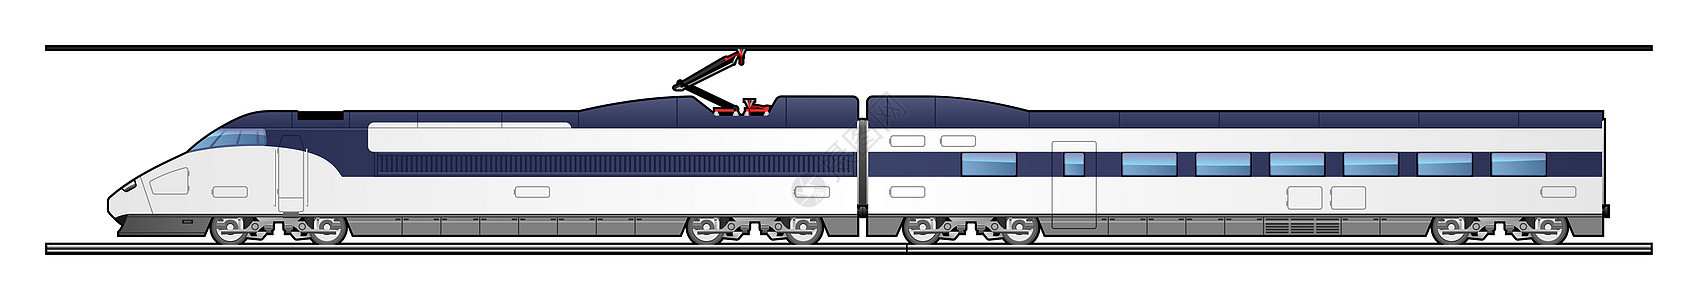 高速火车机车乘客运输列车铁路白色绘画插图草稿草图图片